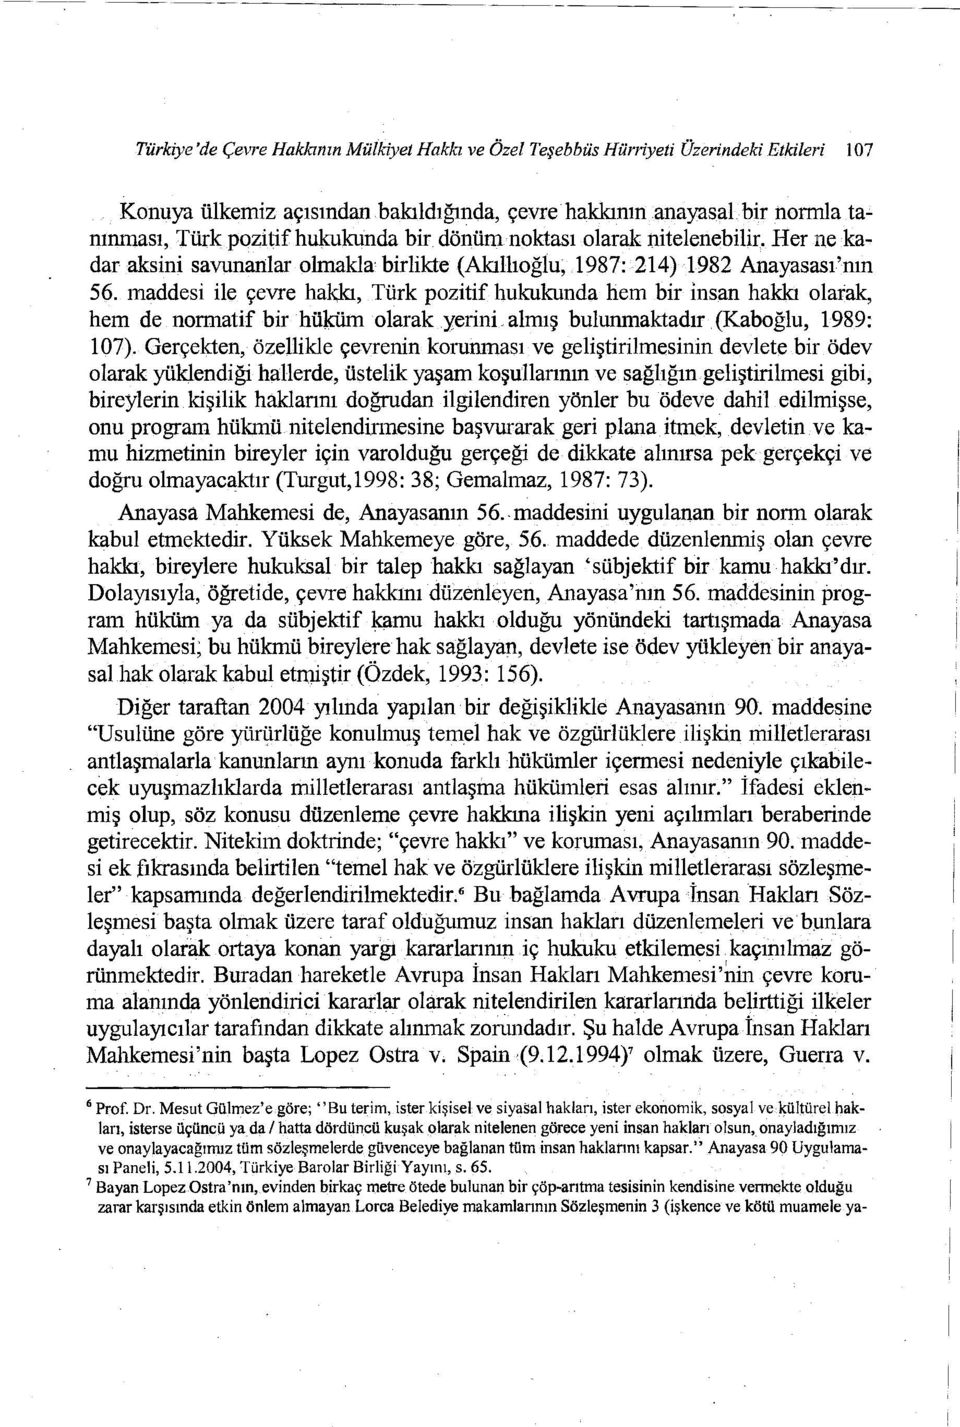 maddesi ile çevre hakkı, Türk pozitif hukukunda hem bir İnsan hakkı olarak, hem de normatif bir hüküm olarak yerini almış bulunmaktadır (Kaboğlu, 1989: 107).